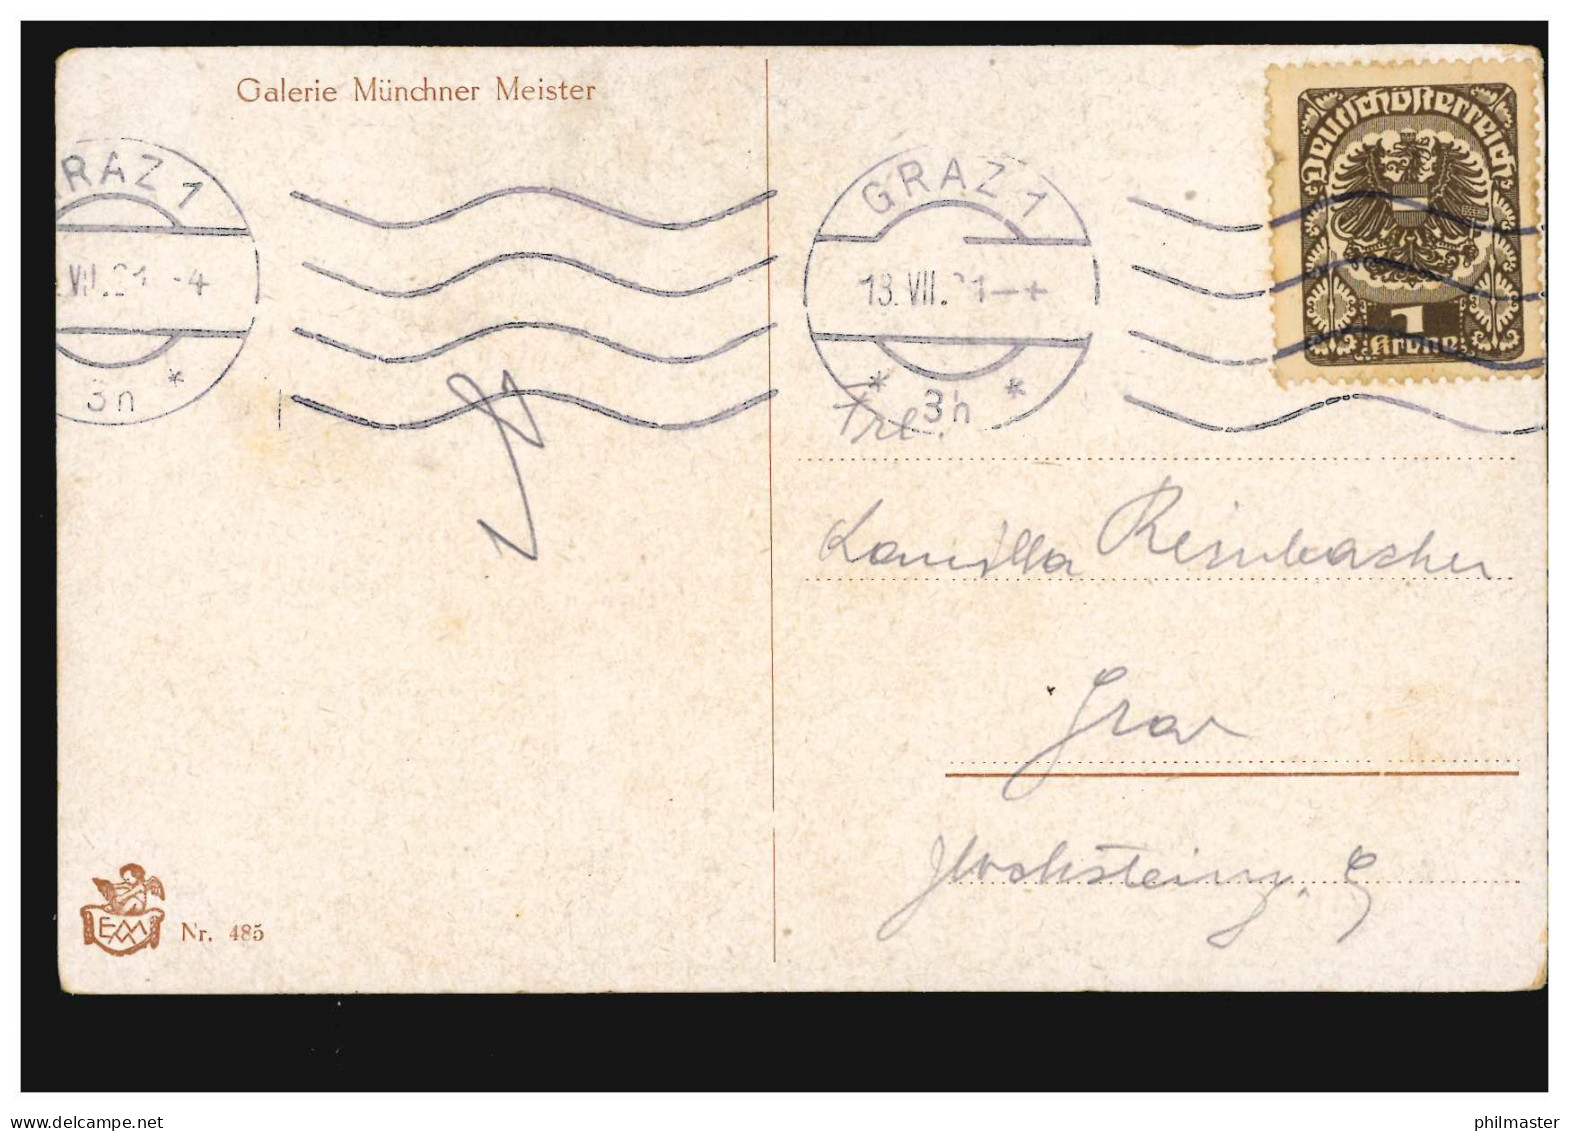 Künstler-AK Jodolfi: Der Erste Brief, Galerie Münchner Meister, GRAZ 13.7.1921 - Unclassified